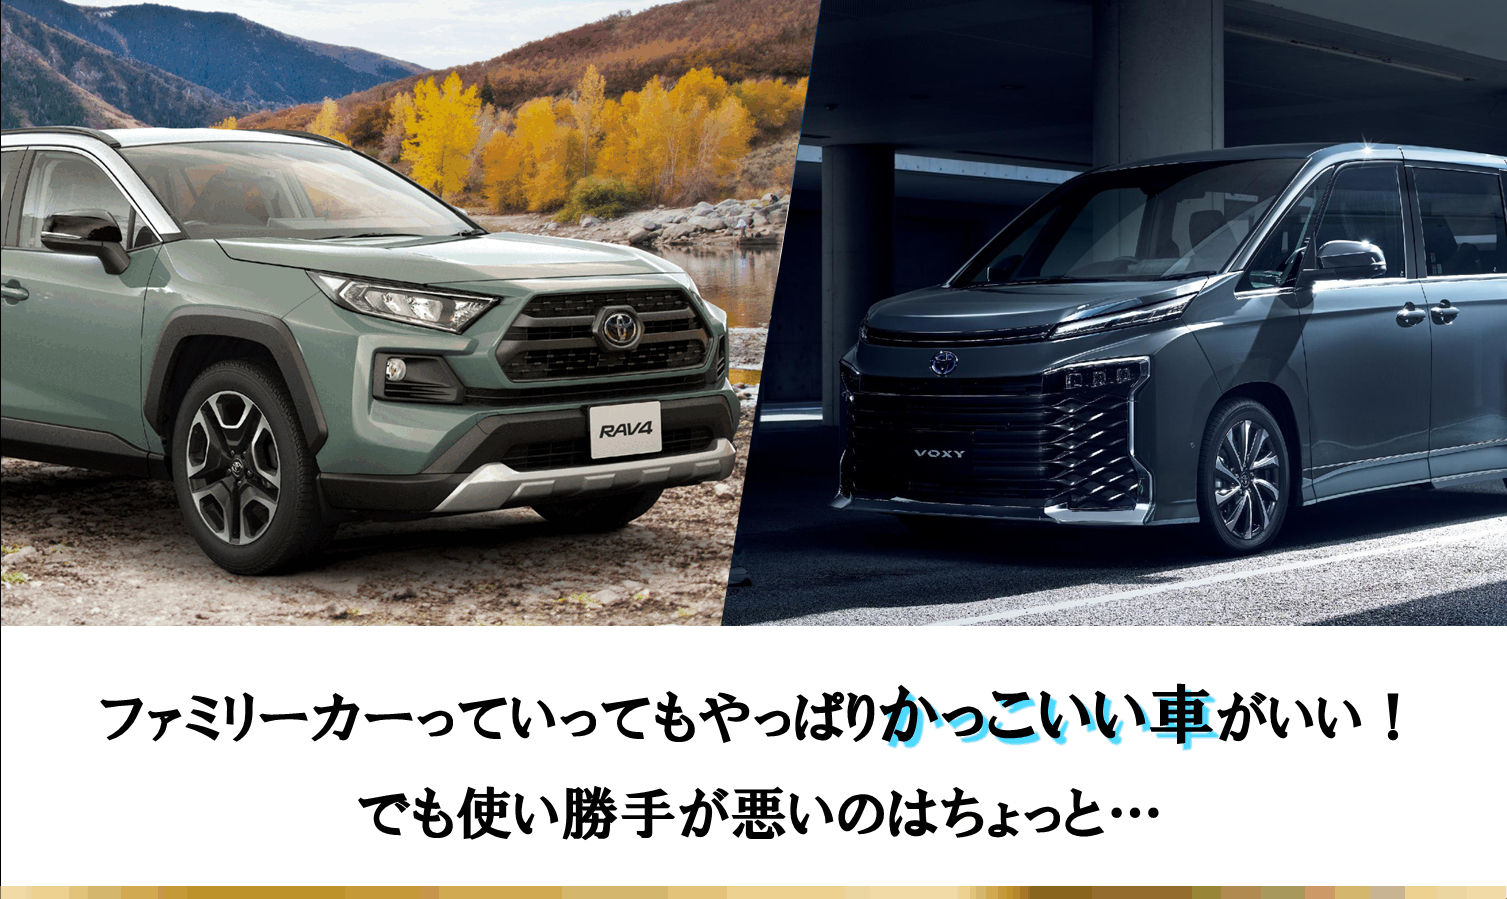 デザインで選ぶ ファミリーカー人気ランキングbest3 ネッツトヨタ愛媛株式会社